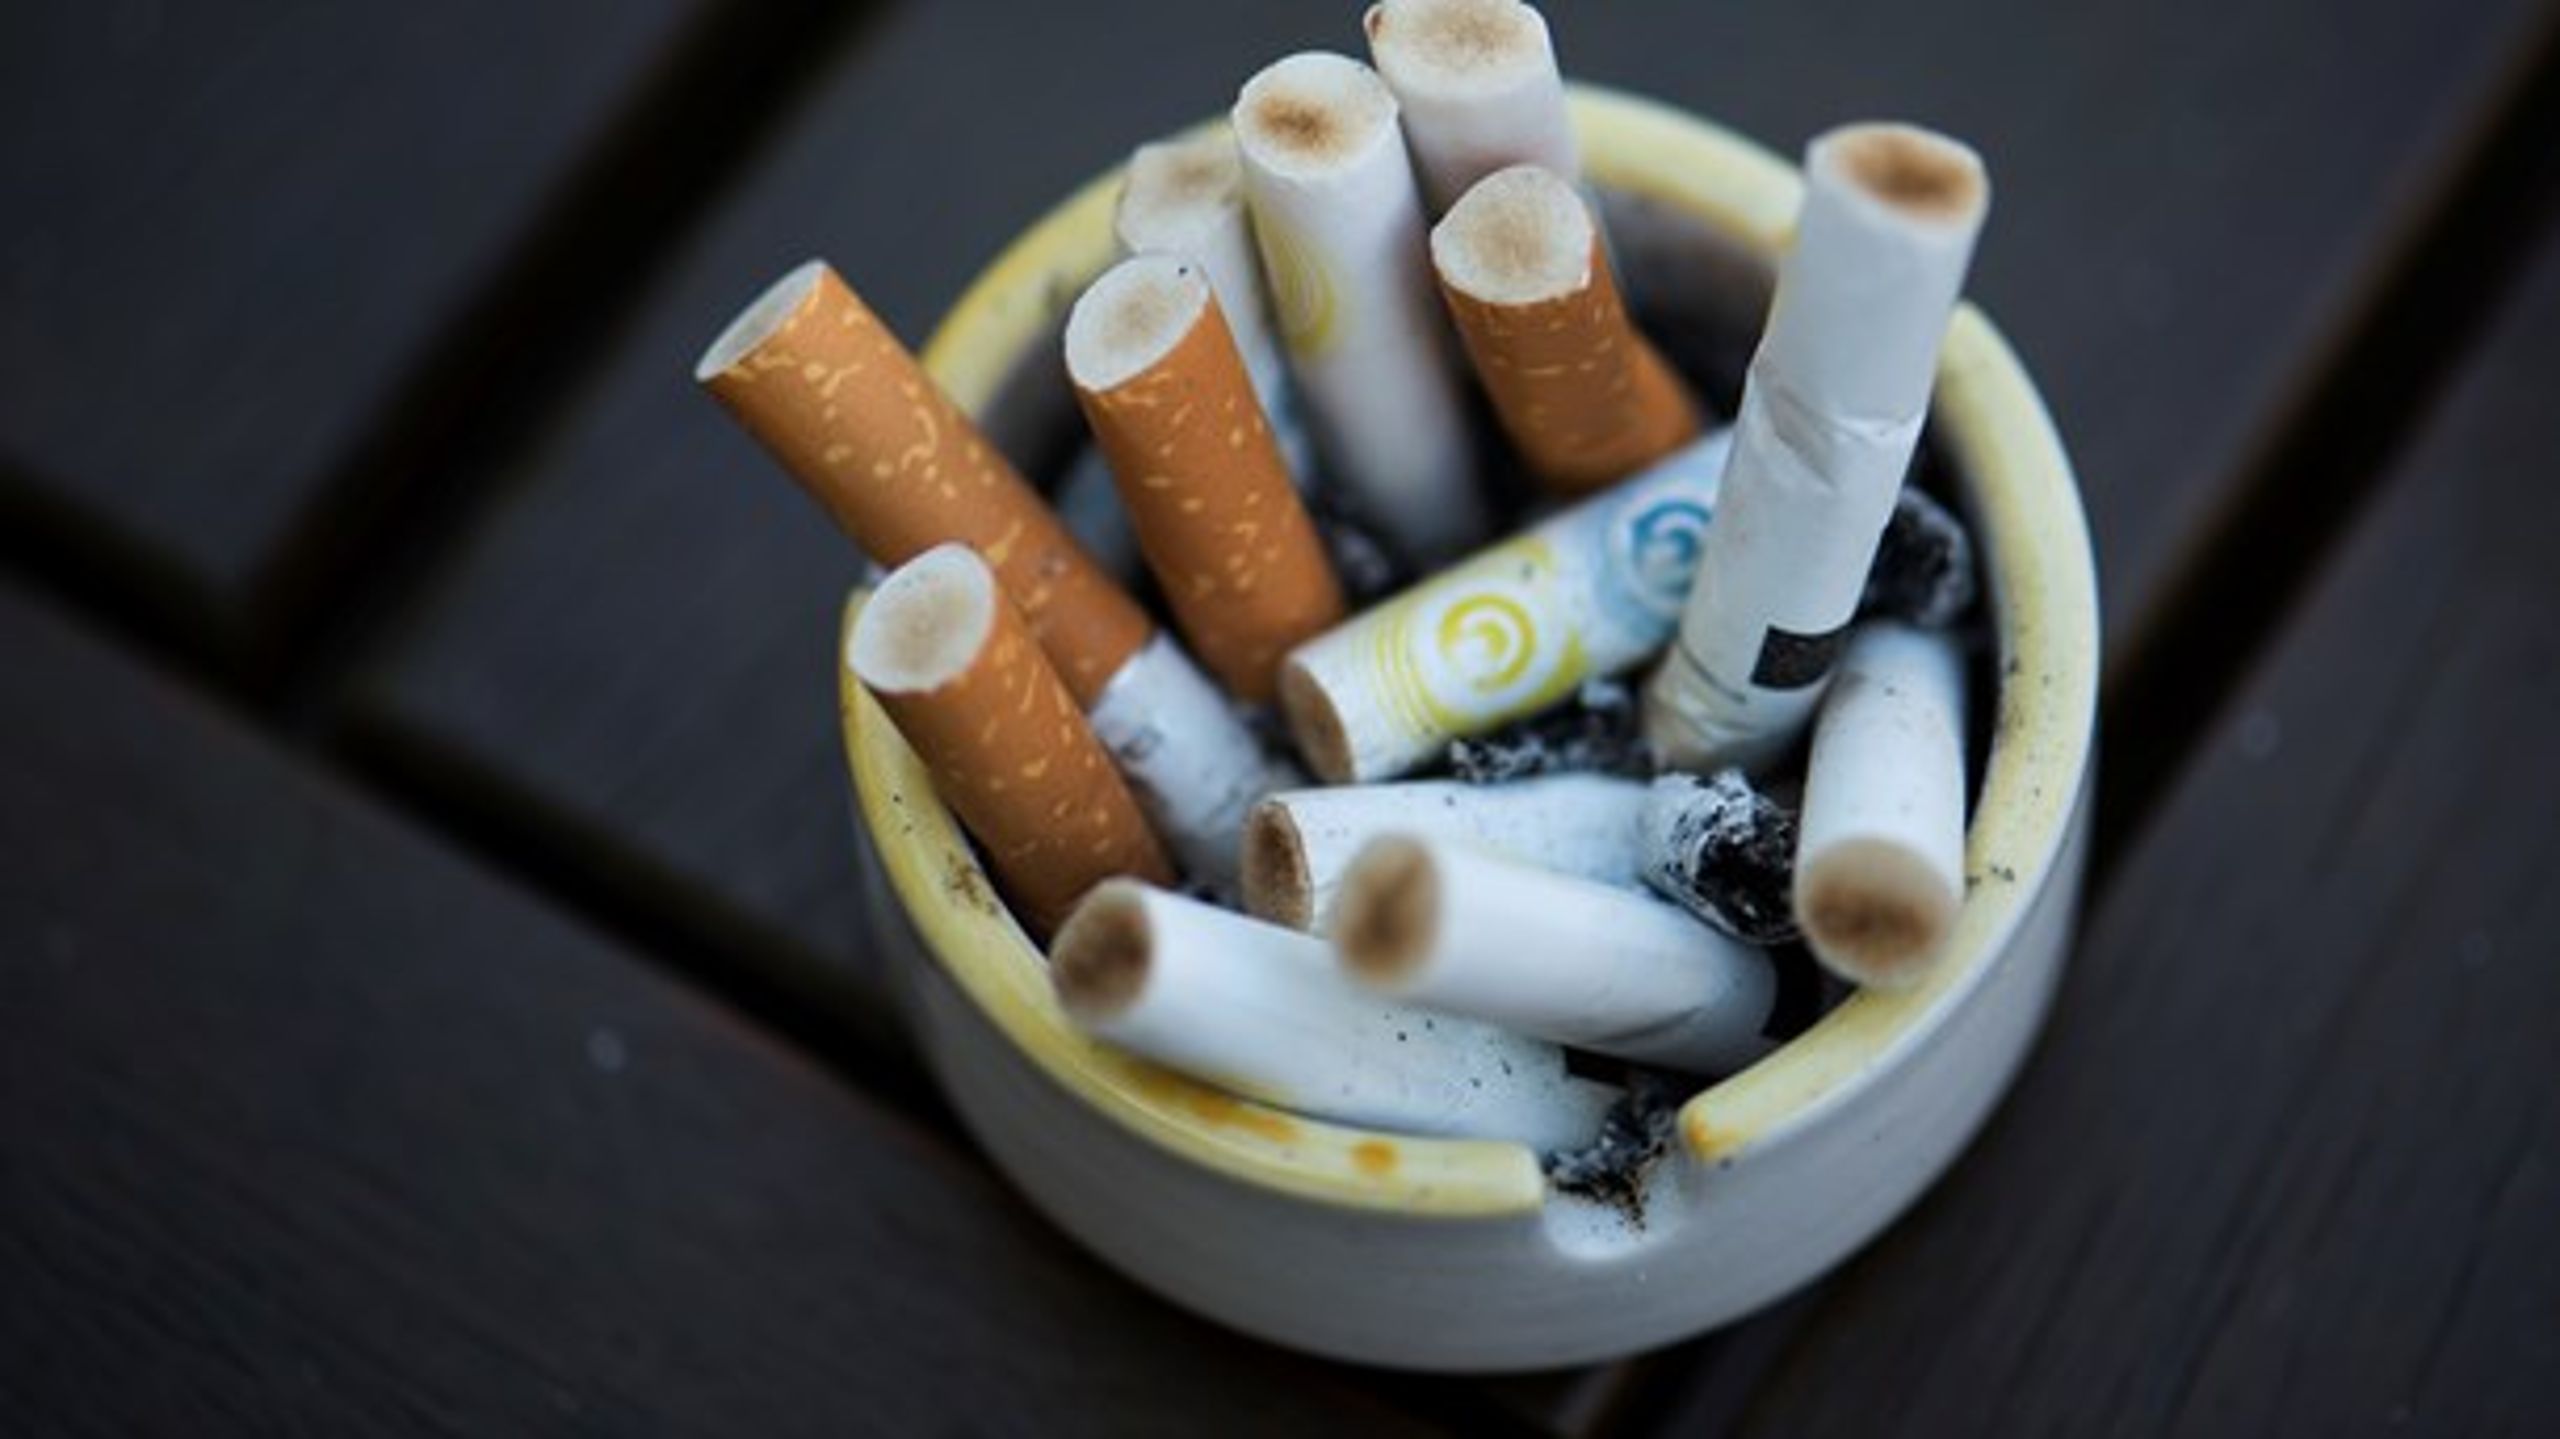 Det er ikke logisk, at der er forskel på rygeregler på gymnasieuddannelserne og erhvervsuddannelserne, mener&nbsp;Tina
Christensen og Anne Brandt.